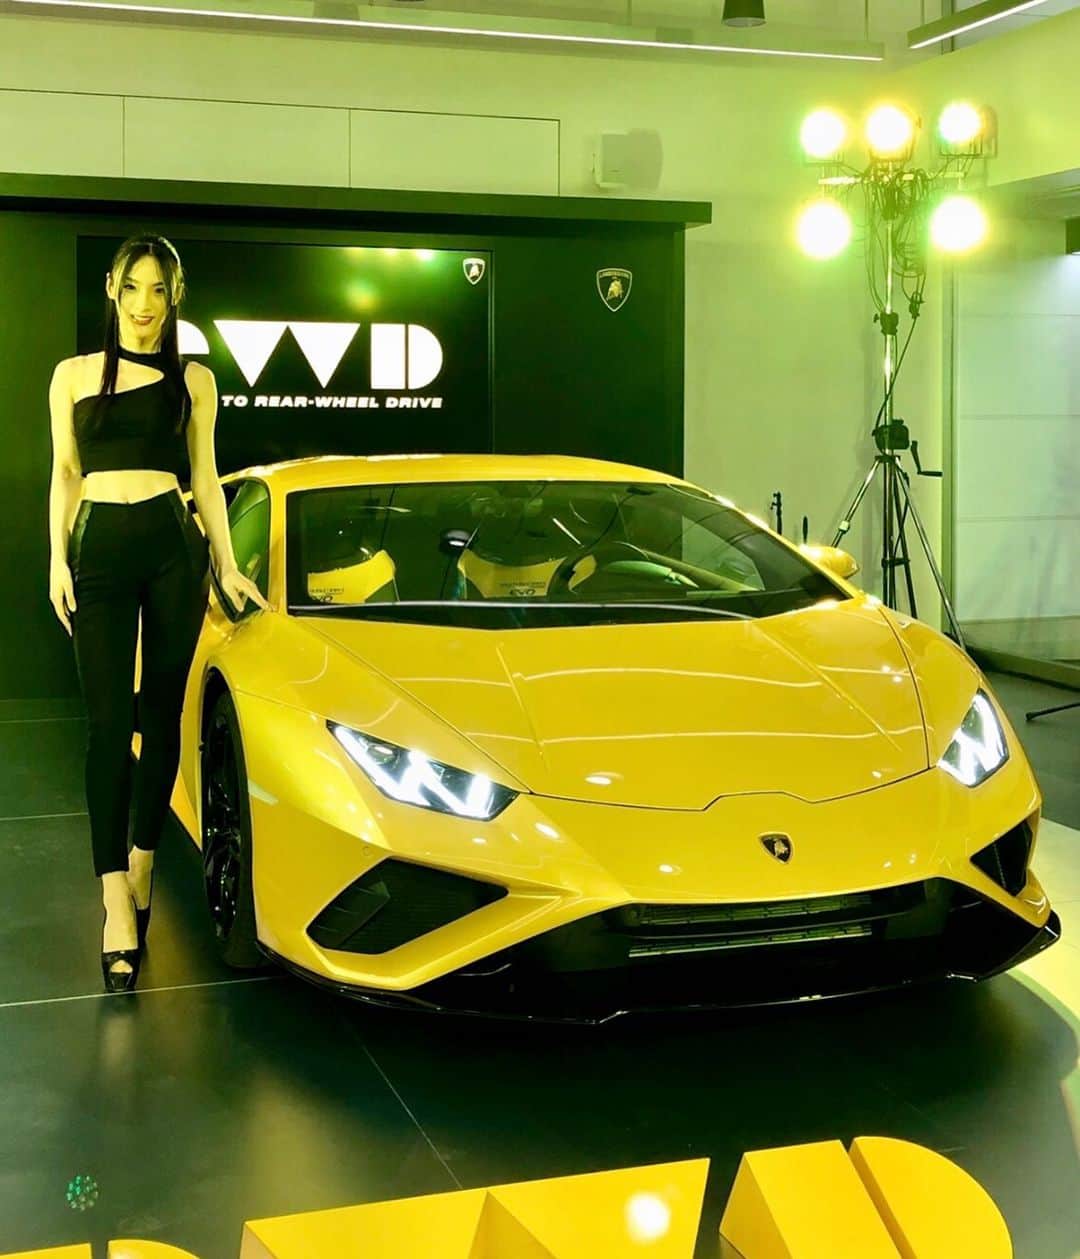 HILOCO aka neroDollのインスタグラム：「Lamborghini #HuracanEVORWD premiere Nagoya💛🖤🖤. . 2020年の回し初めは名古屋ランボルギーニ！ 先日日本で初公開されたばかりのウラカンEVO後輪駆動モデル『ウラカンEVO RWD』の名古屋お披露目パーティーでDJでした⚡️⚡️🎵. . 車体は新カラーGiallo Belenus（イエロー）と黒のコントラストが美しく、ブースもステージも黄色と黒で統一されて格好良かった。 衣装もコンセプトに合わせてスポーティなブラック系で。 . 来週土日は大阪/神戸公開。三都市ともショールームに伺うのは初めてで楽しみです😍. . ちなみに25日土曜の夜はジラフATLANTIS、こちらの数量限定ディスカウントも絶賛受付中❣️. . 本年もどうぞ よろしくお願いいたします☺️🙏✨✨. . . 2020 January DJ schedule  18 Sat Lamborghini Nagoya 25 Sat Lamborghini Osaka 25 Sat Giraffe Osaka 26 Sun Lamborghini Kobe  #Lamborghini #huracan #huracanevo #lamborghinihuracan #ランボルギーニ #ウラカン #スーパーカー #スポーツカー #housemusicdj #technodj #techhousedj #femaledj #womendj #housemusiclovers #techhouselovers #housemusiclover #housemusicfamily #housemusicdjs #deephousedj #deephouseparty #housemusic4life #supercar #carlovers #yellowcar #名古屋 #lamborghinihuracan #lamborghinis #sportscars #sportscar #supercars」